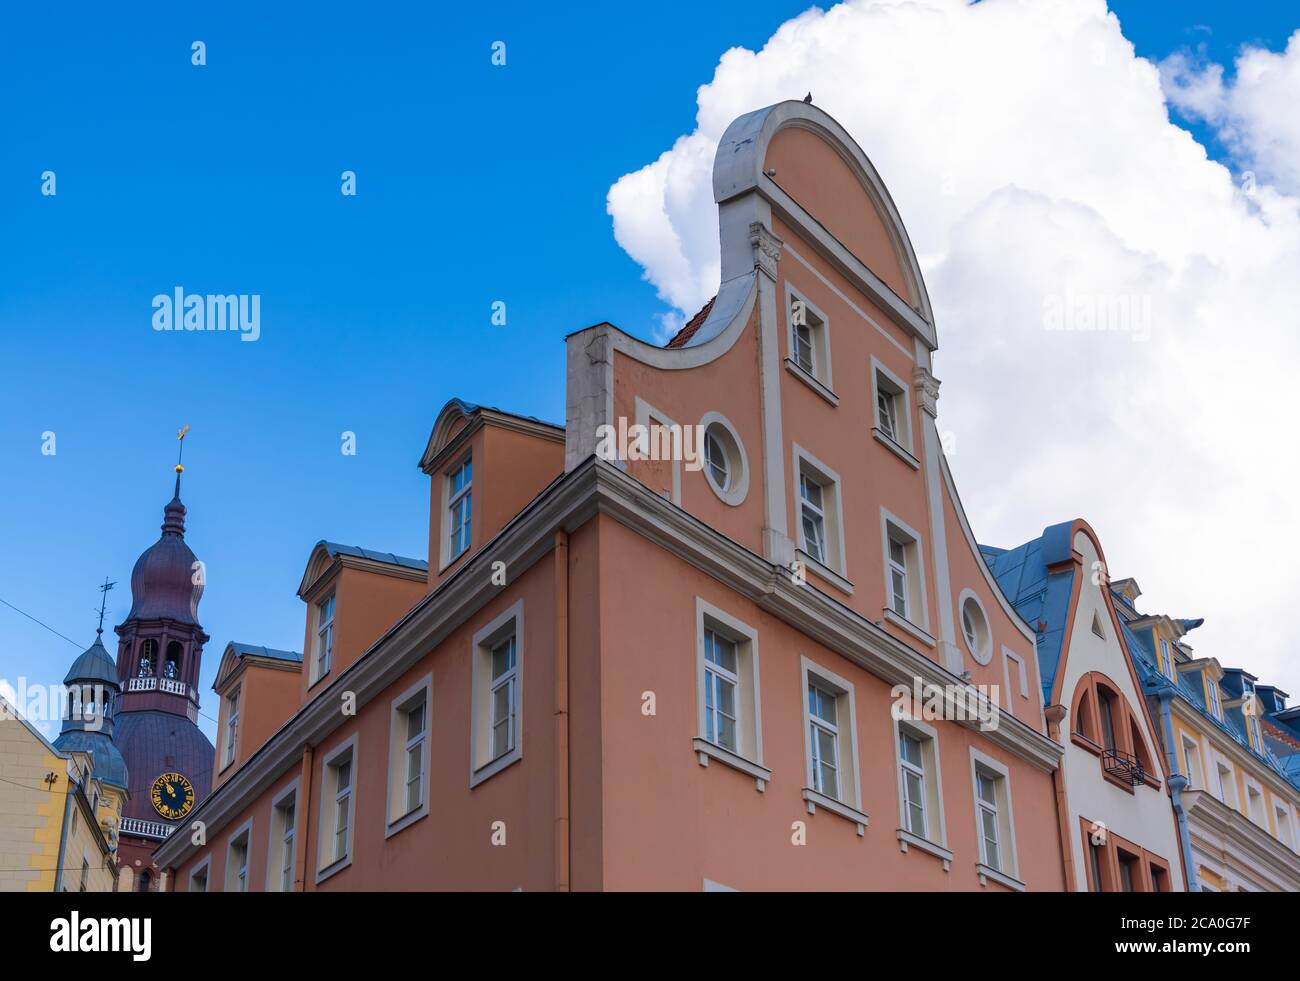 La encantadora plaza de la catedral en el casco antiguo de Riga, Letonia. Fundada en 1209, su casco antiguo es un lugar declarado Patrimonio de la Humanidad por la UNESCO. Foto de stock